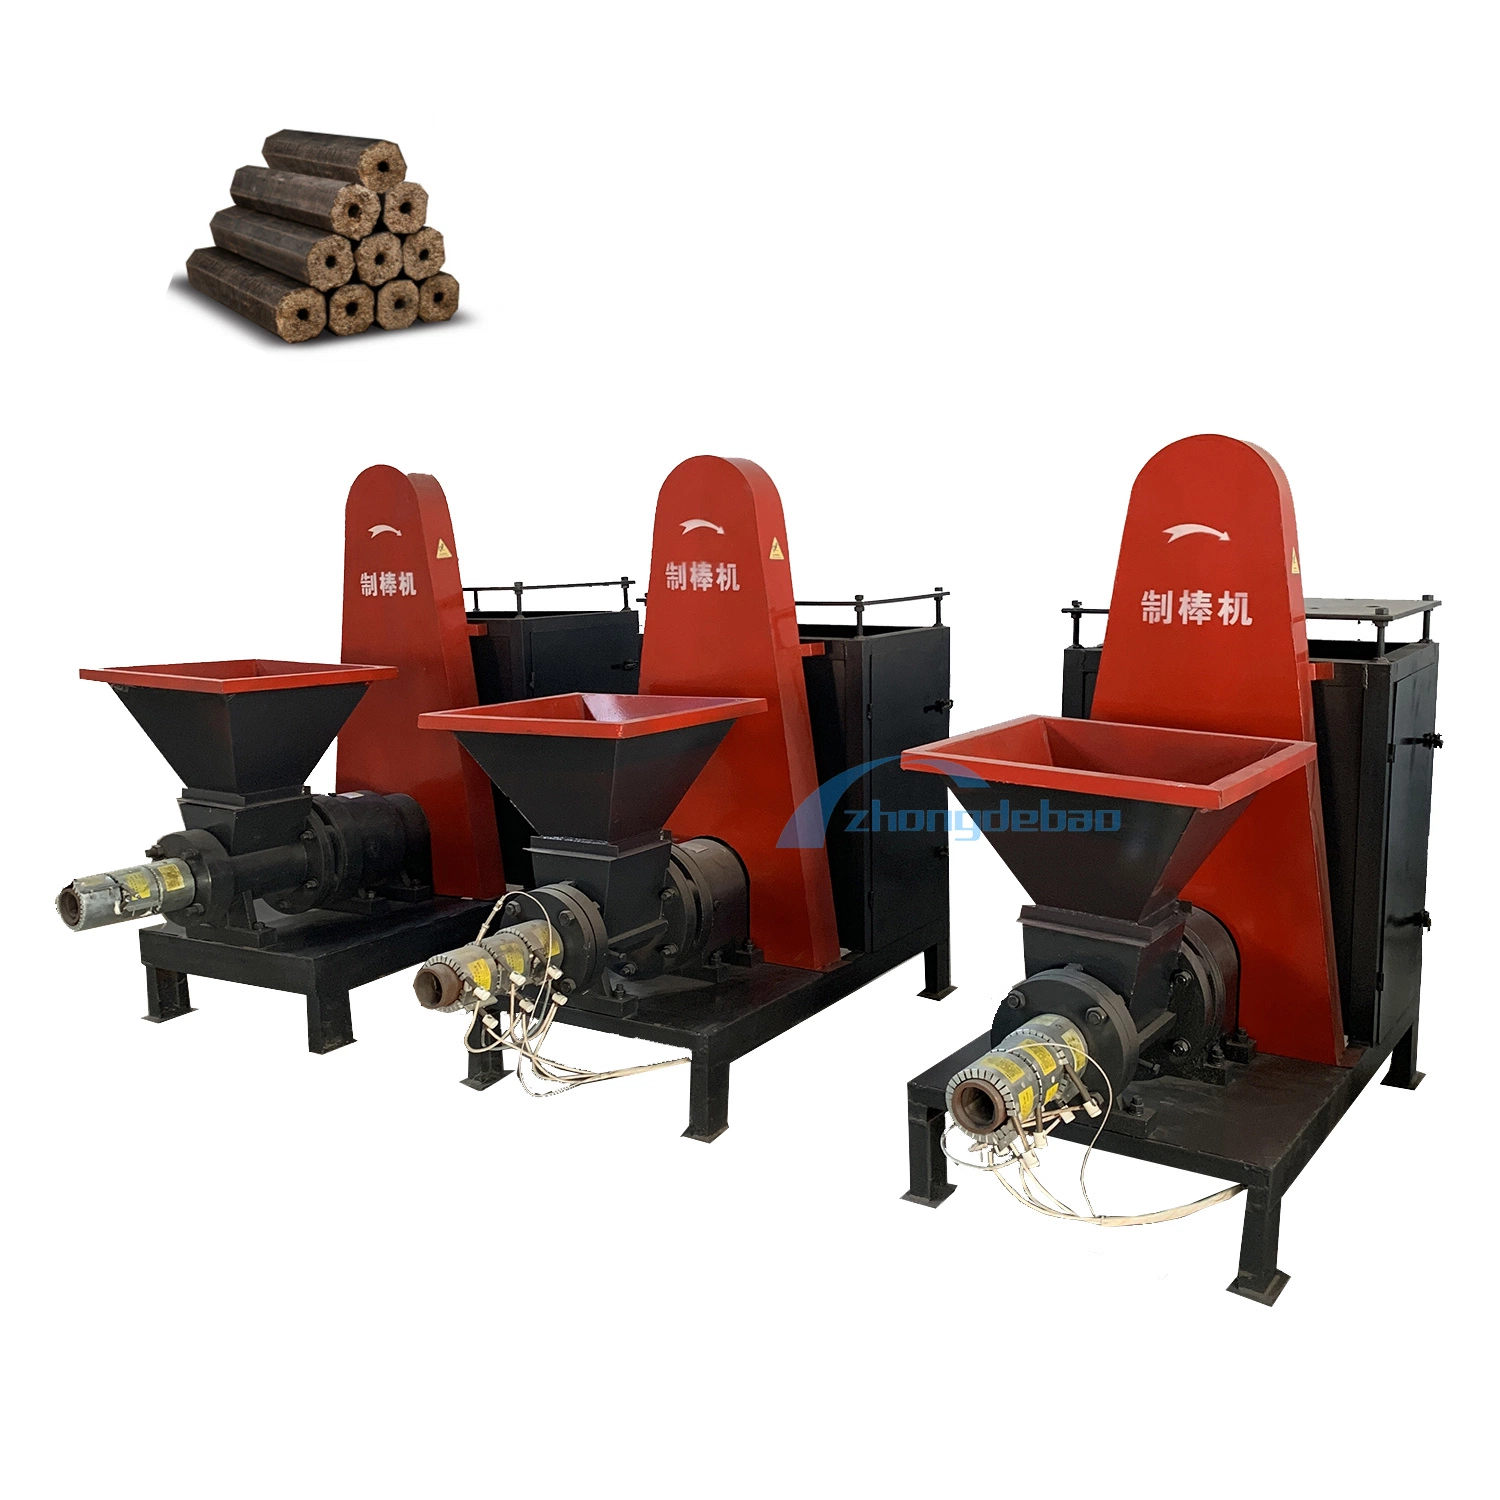 مشترو ماكينات الفحم الخشبية في دبي يشترون آلة صنع بريكيت آلة الإعداد للكتلة الحيوية للنظام